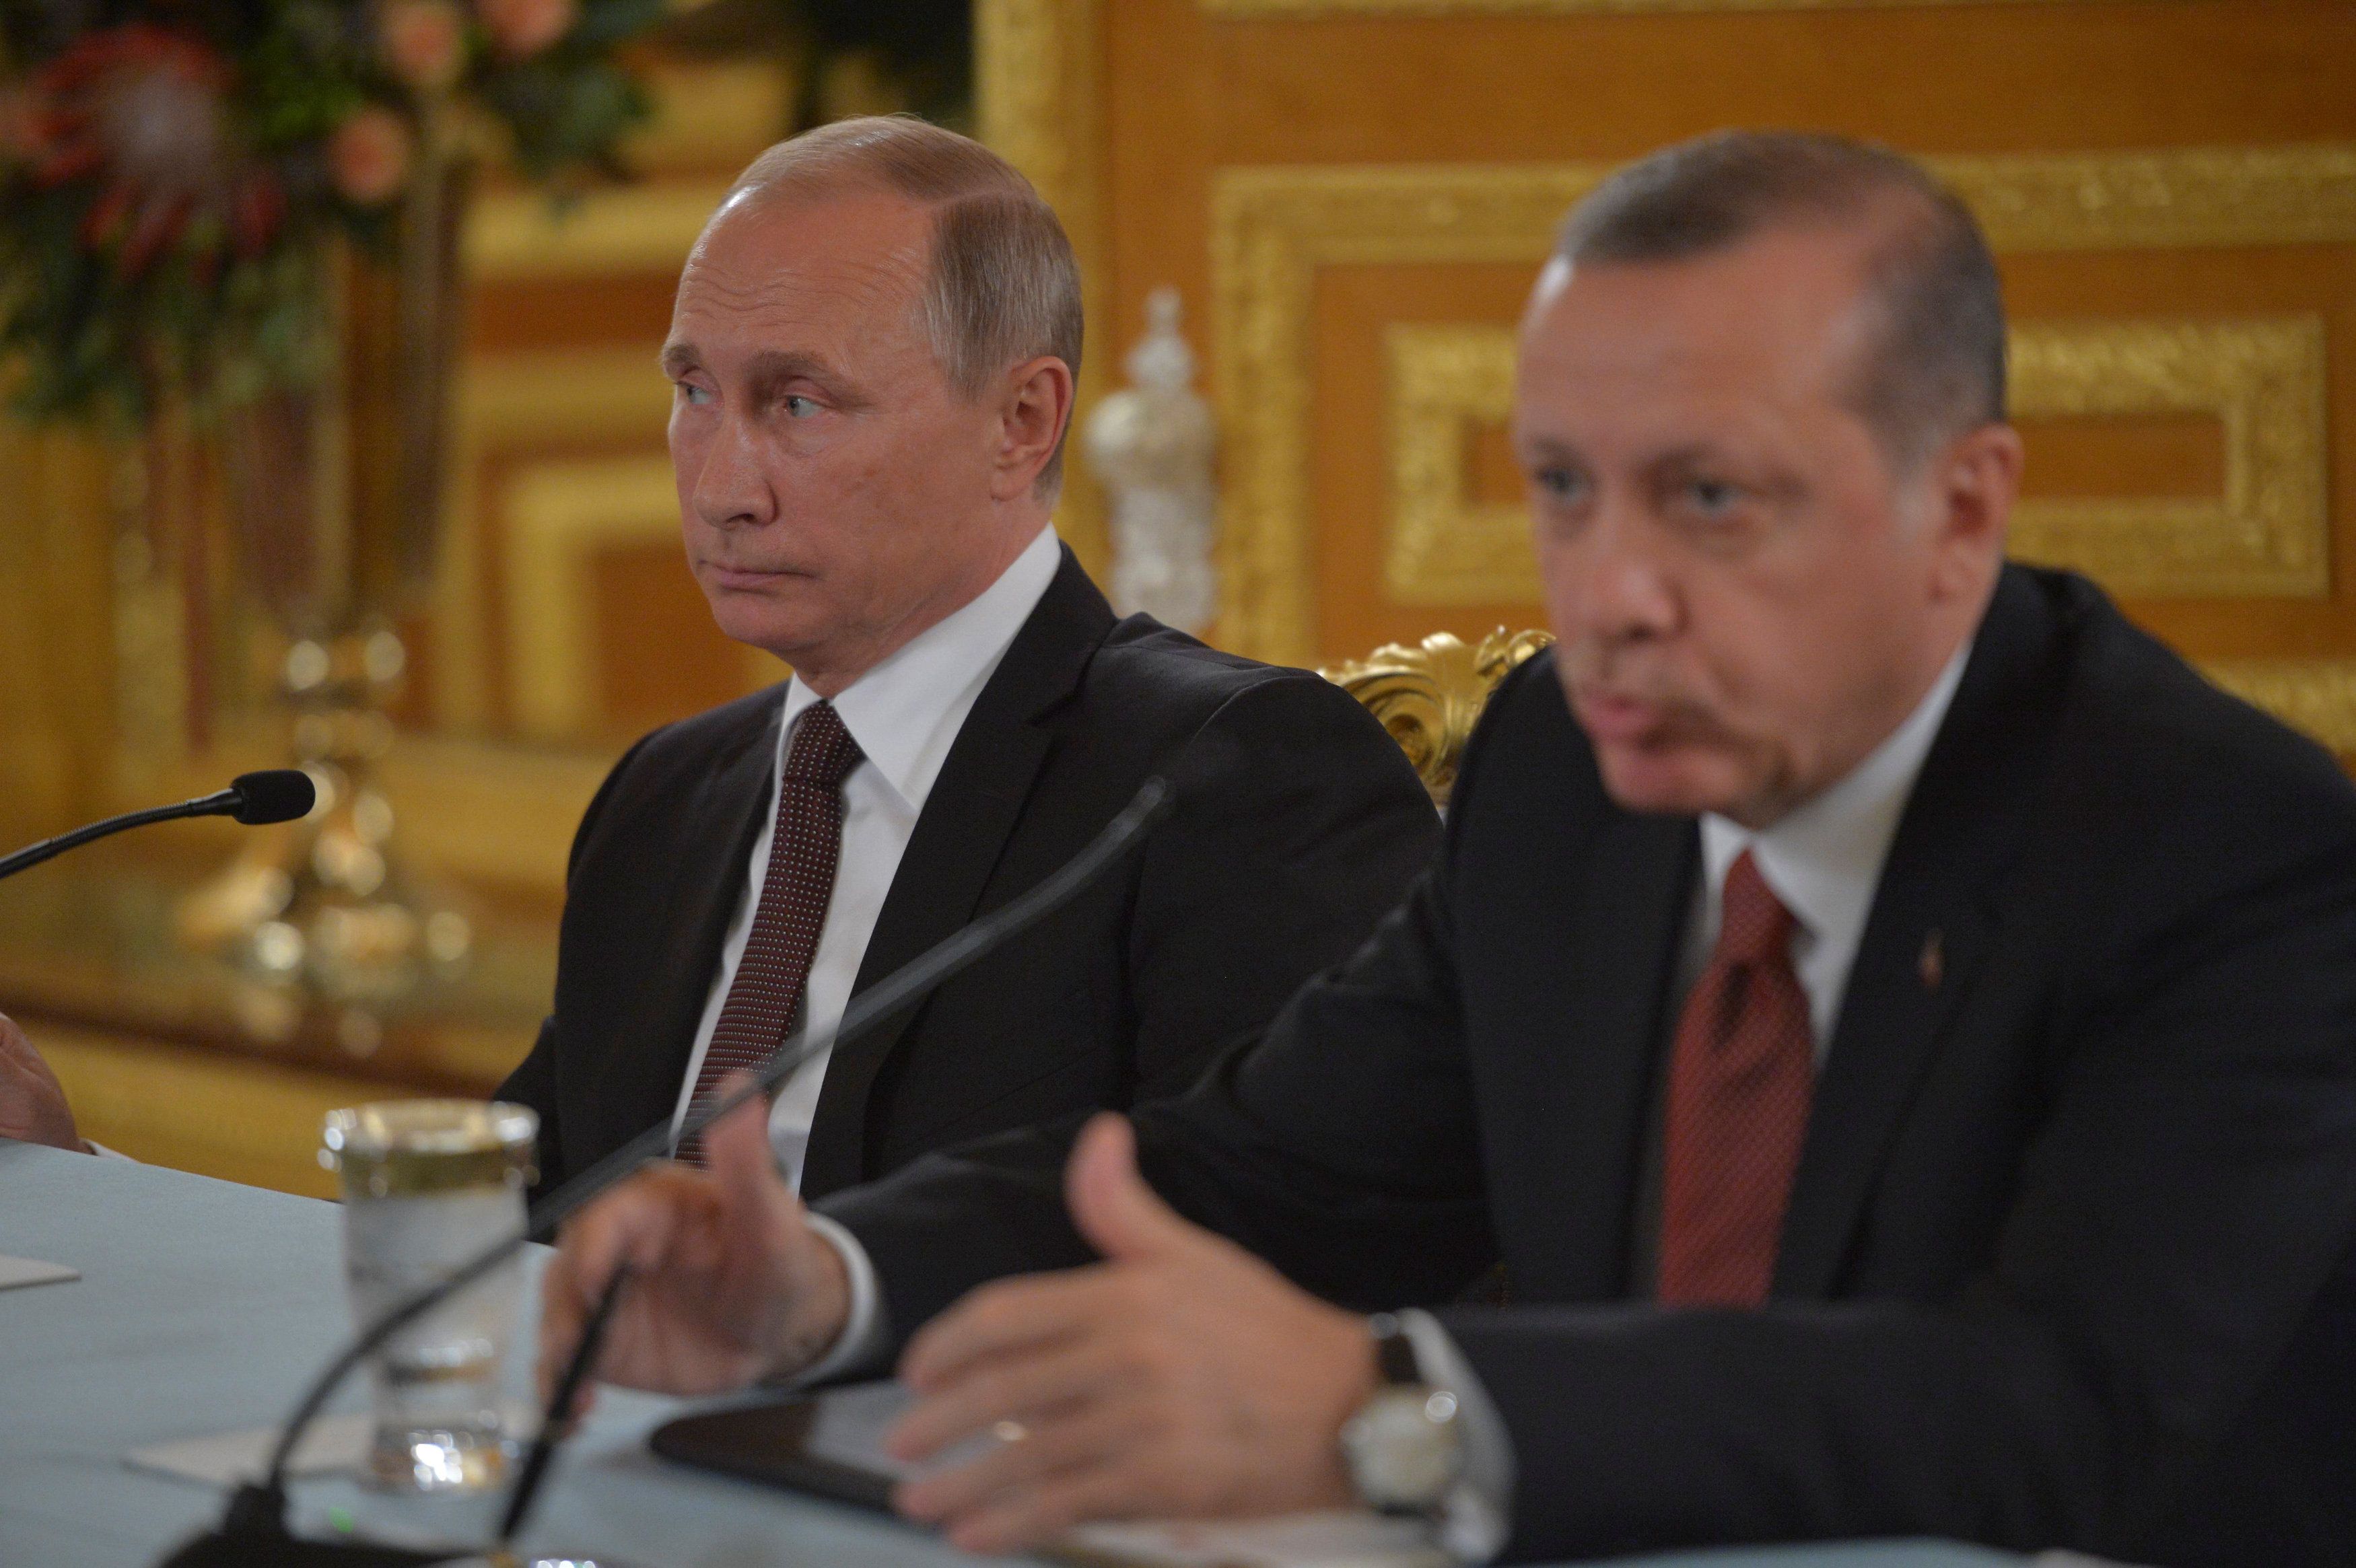 Стало известно, о чем договорились Путин и Эрдоган на встрече в Стамбуле